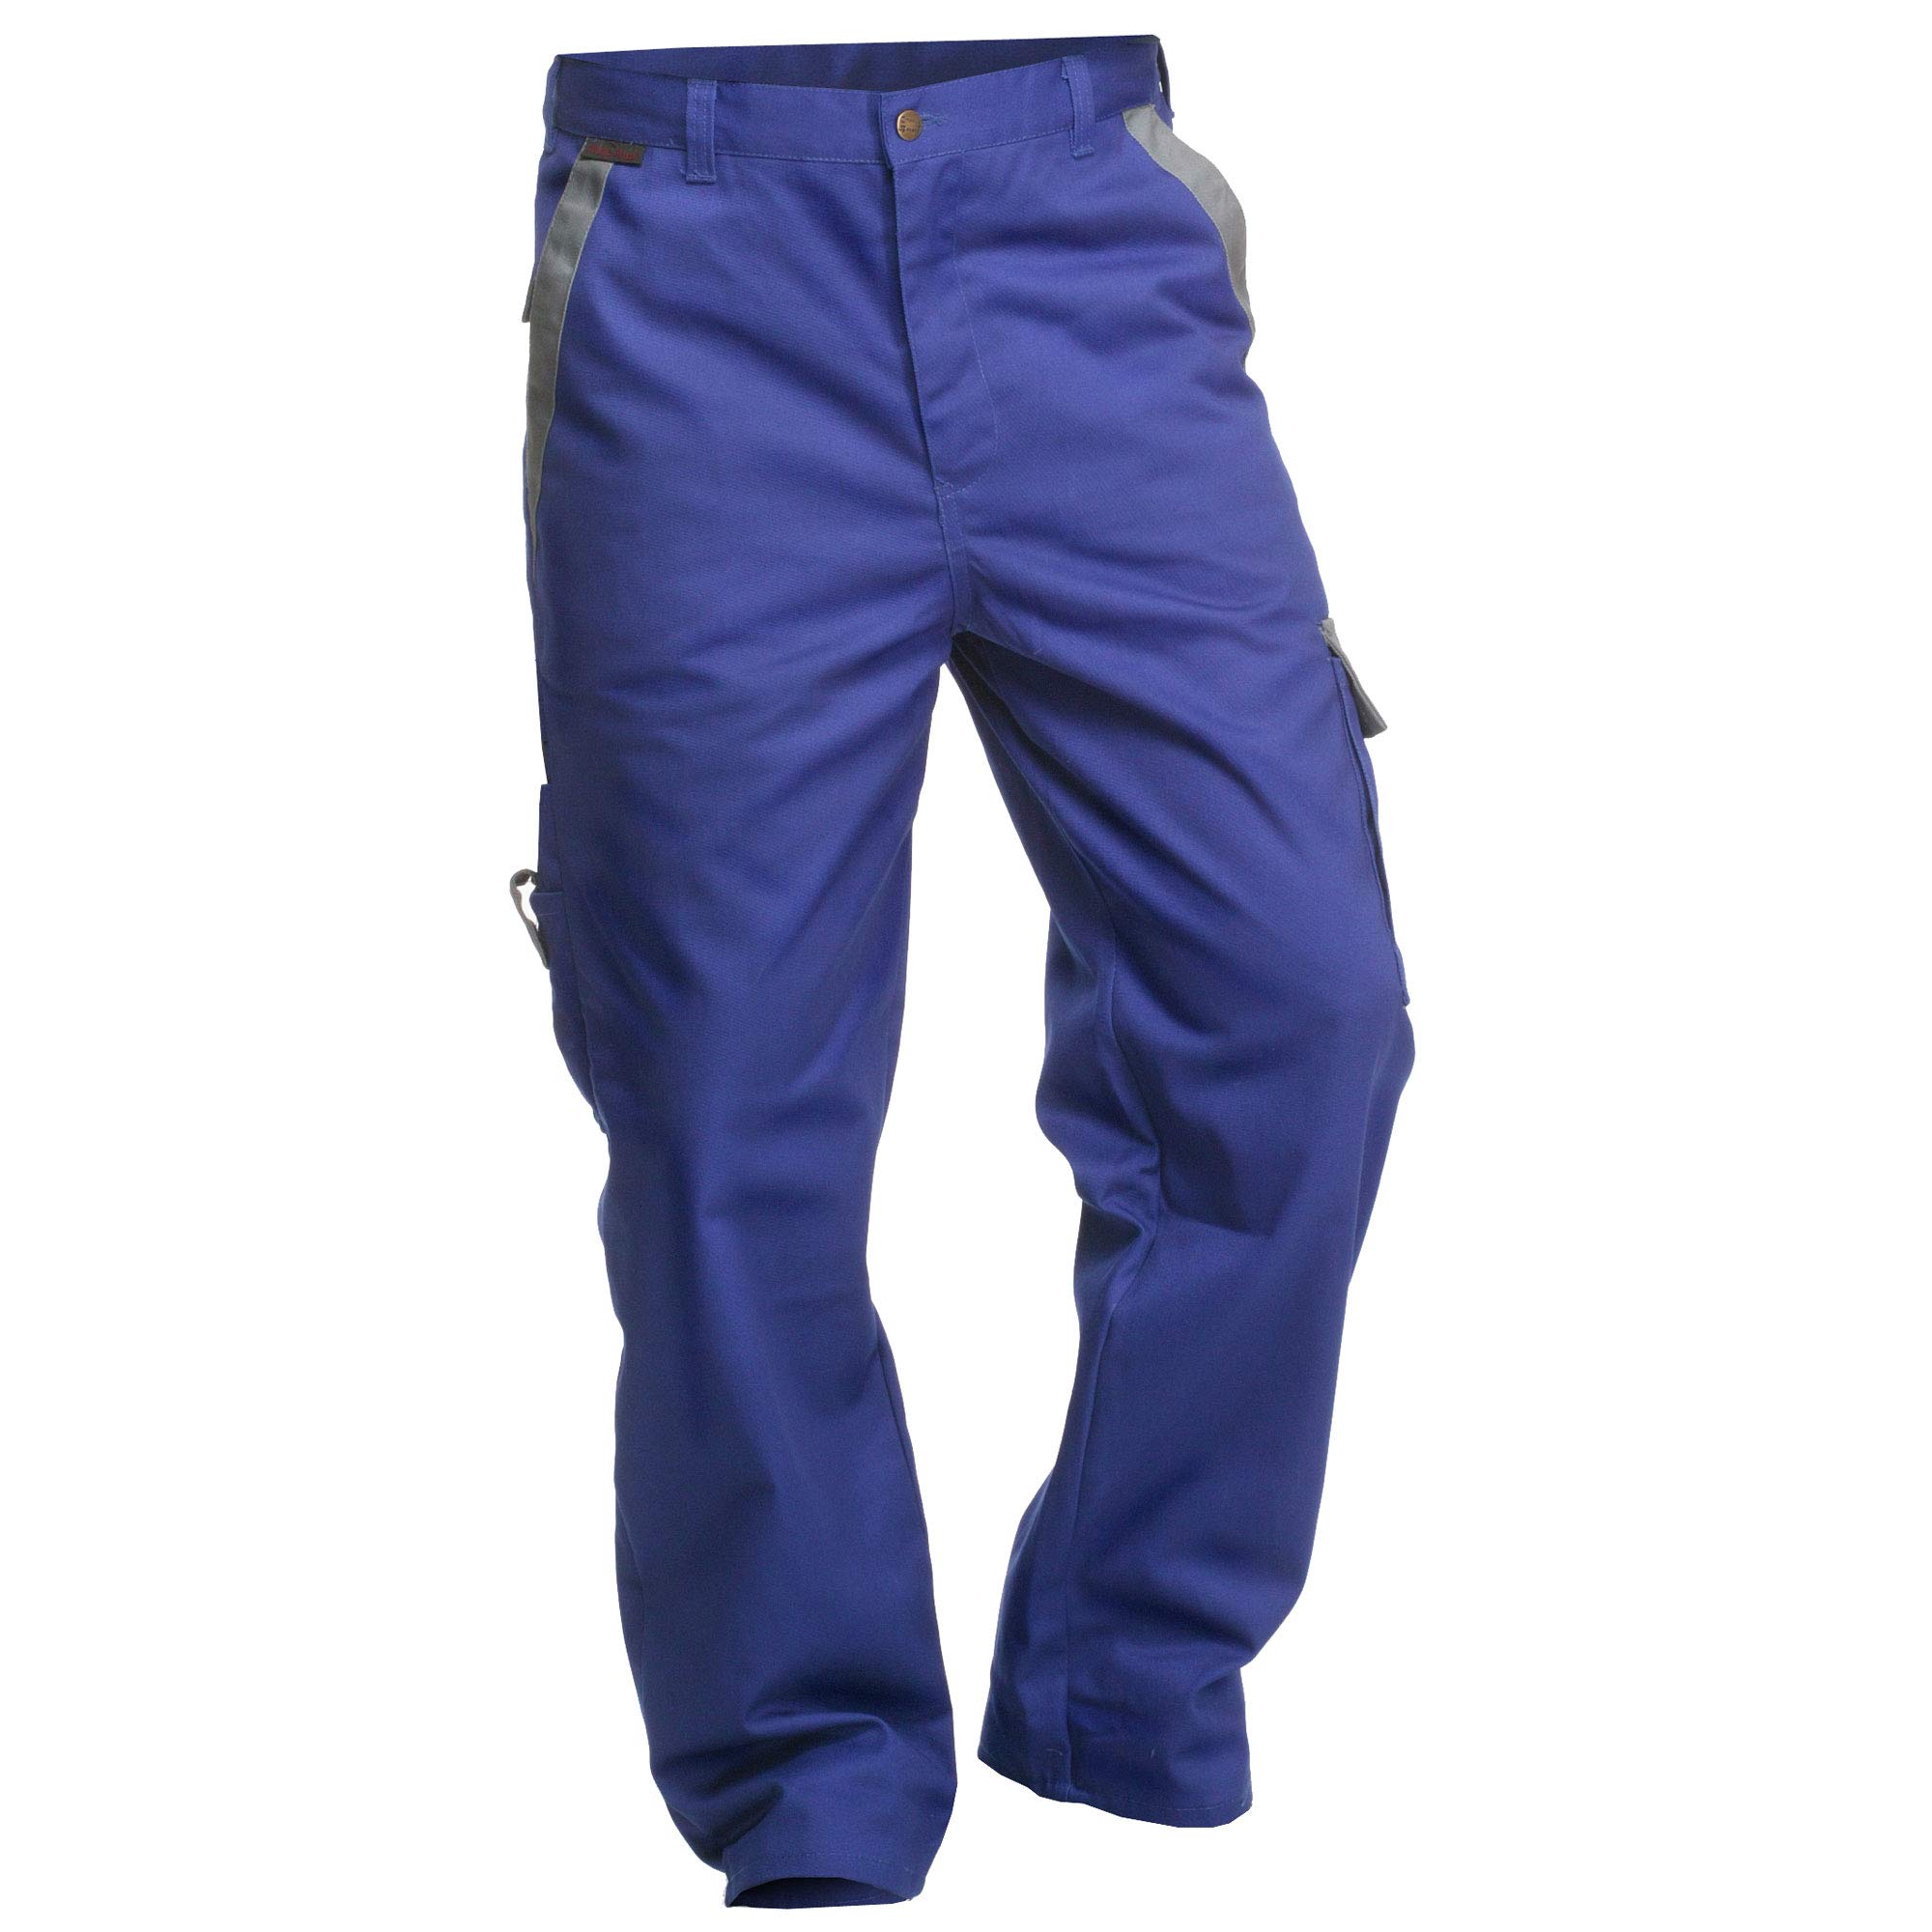 Arbeitshose Charlie Barato Profi Line kornblau/grau - Bundhose für Handwerker Größe 58